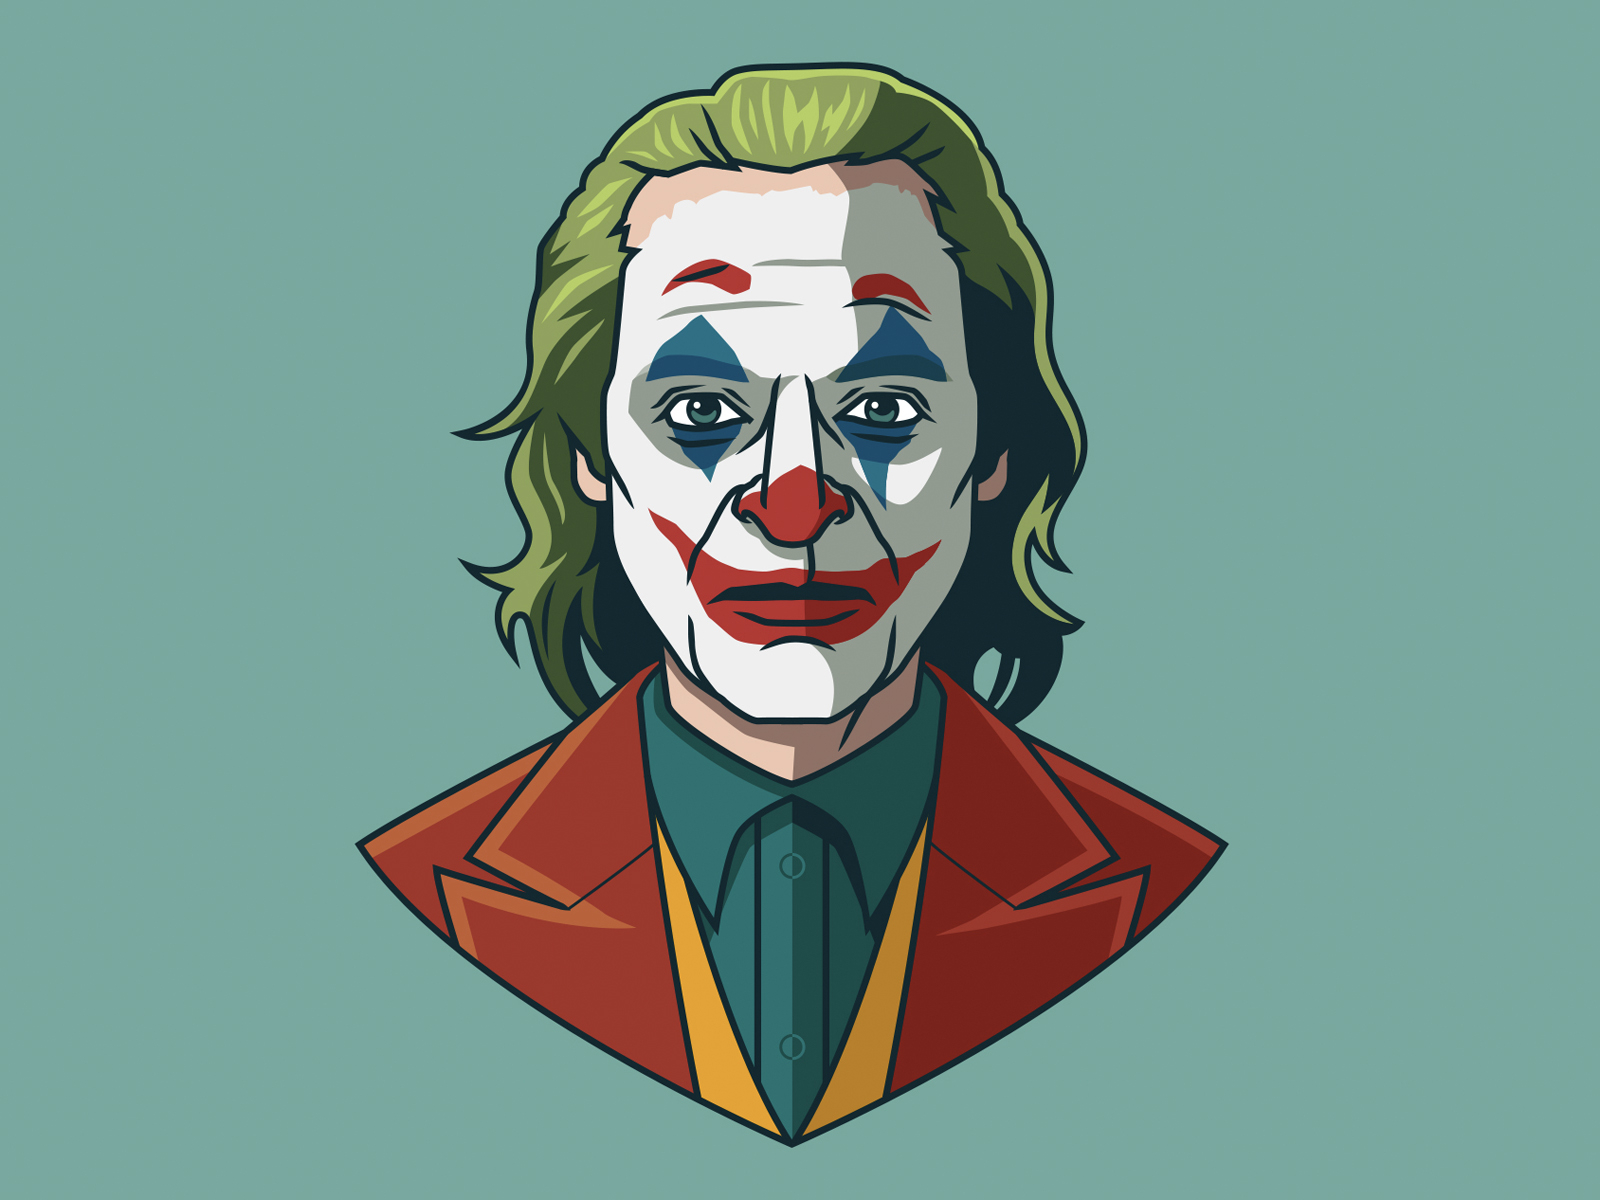 Joaquin Phoenix as Joker by Ben Douglass on Dribbble